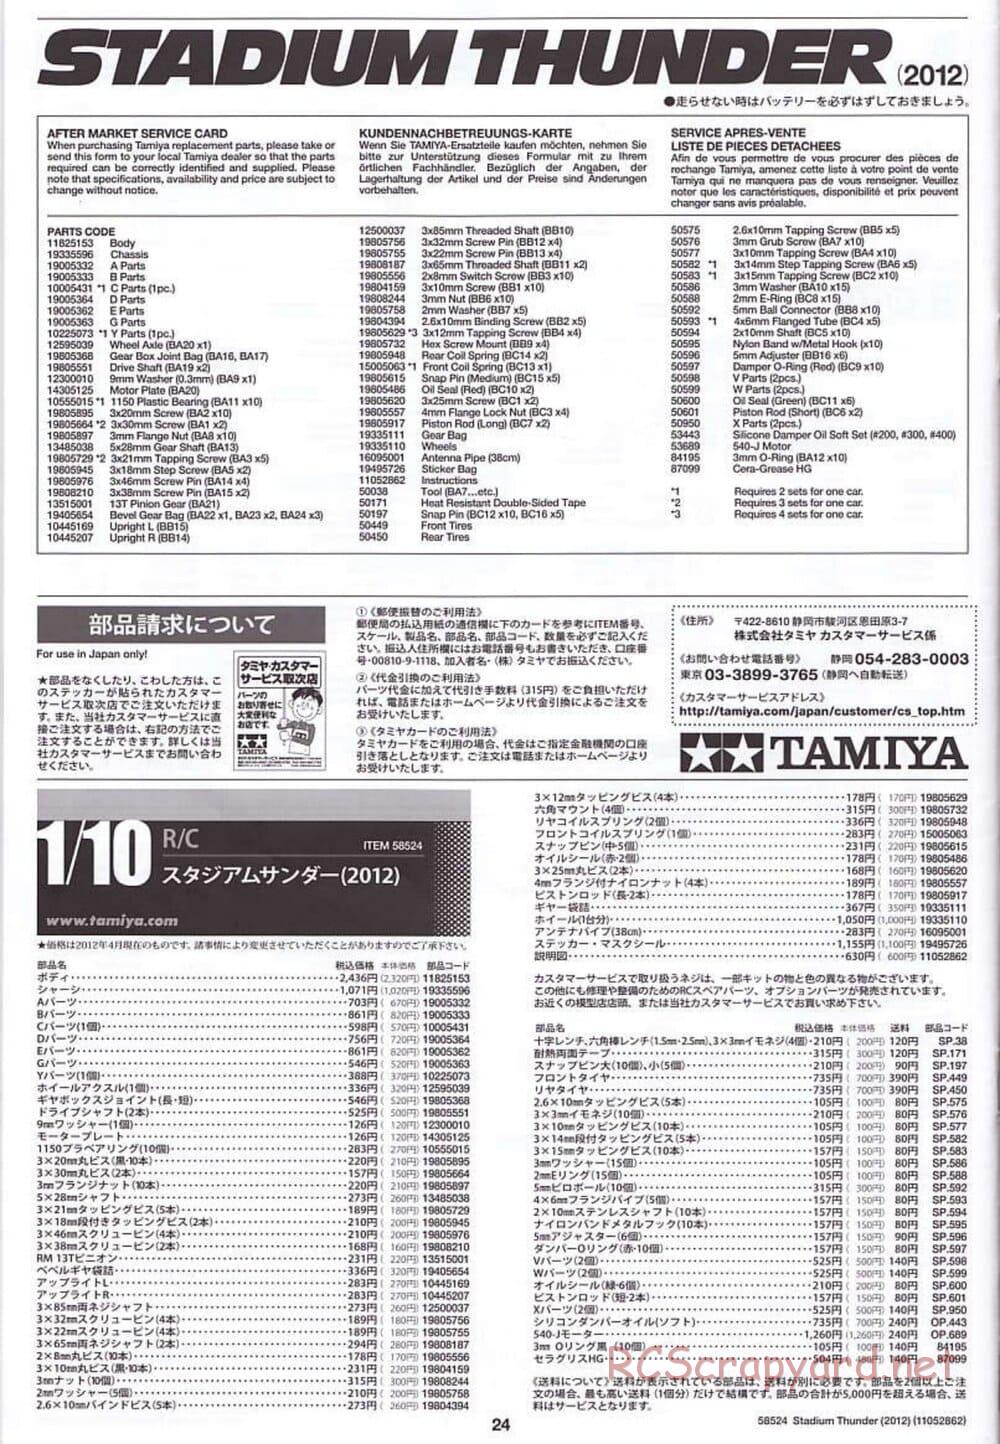 Tamiya - Stadium Thunder 2012 - FAL Chassis - Manual - Page 24